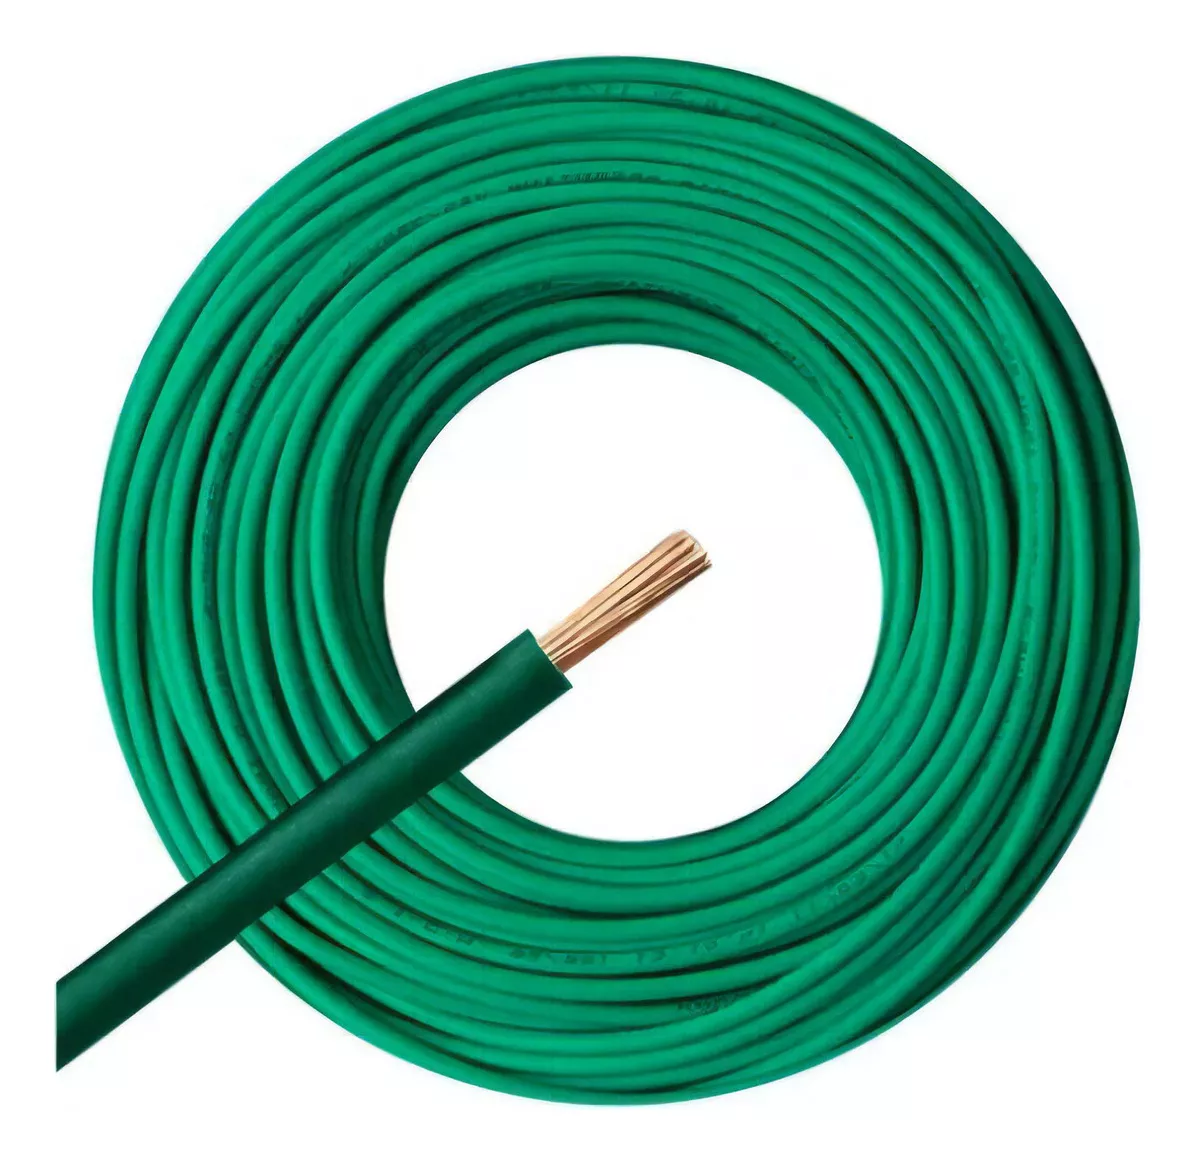 Primera imagen para búsqueda de rollo cable 1.5 mm electricidad cables unipolares